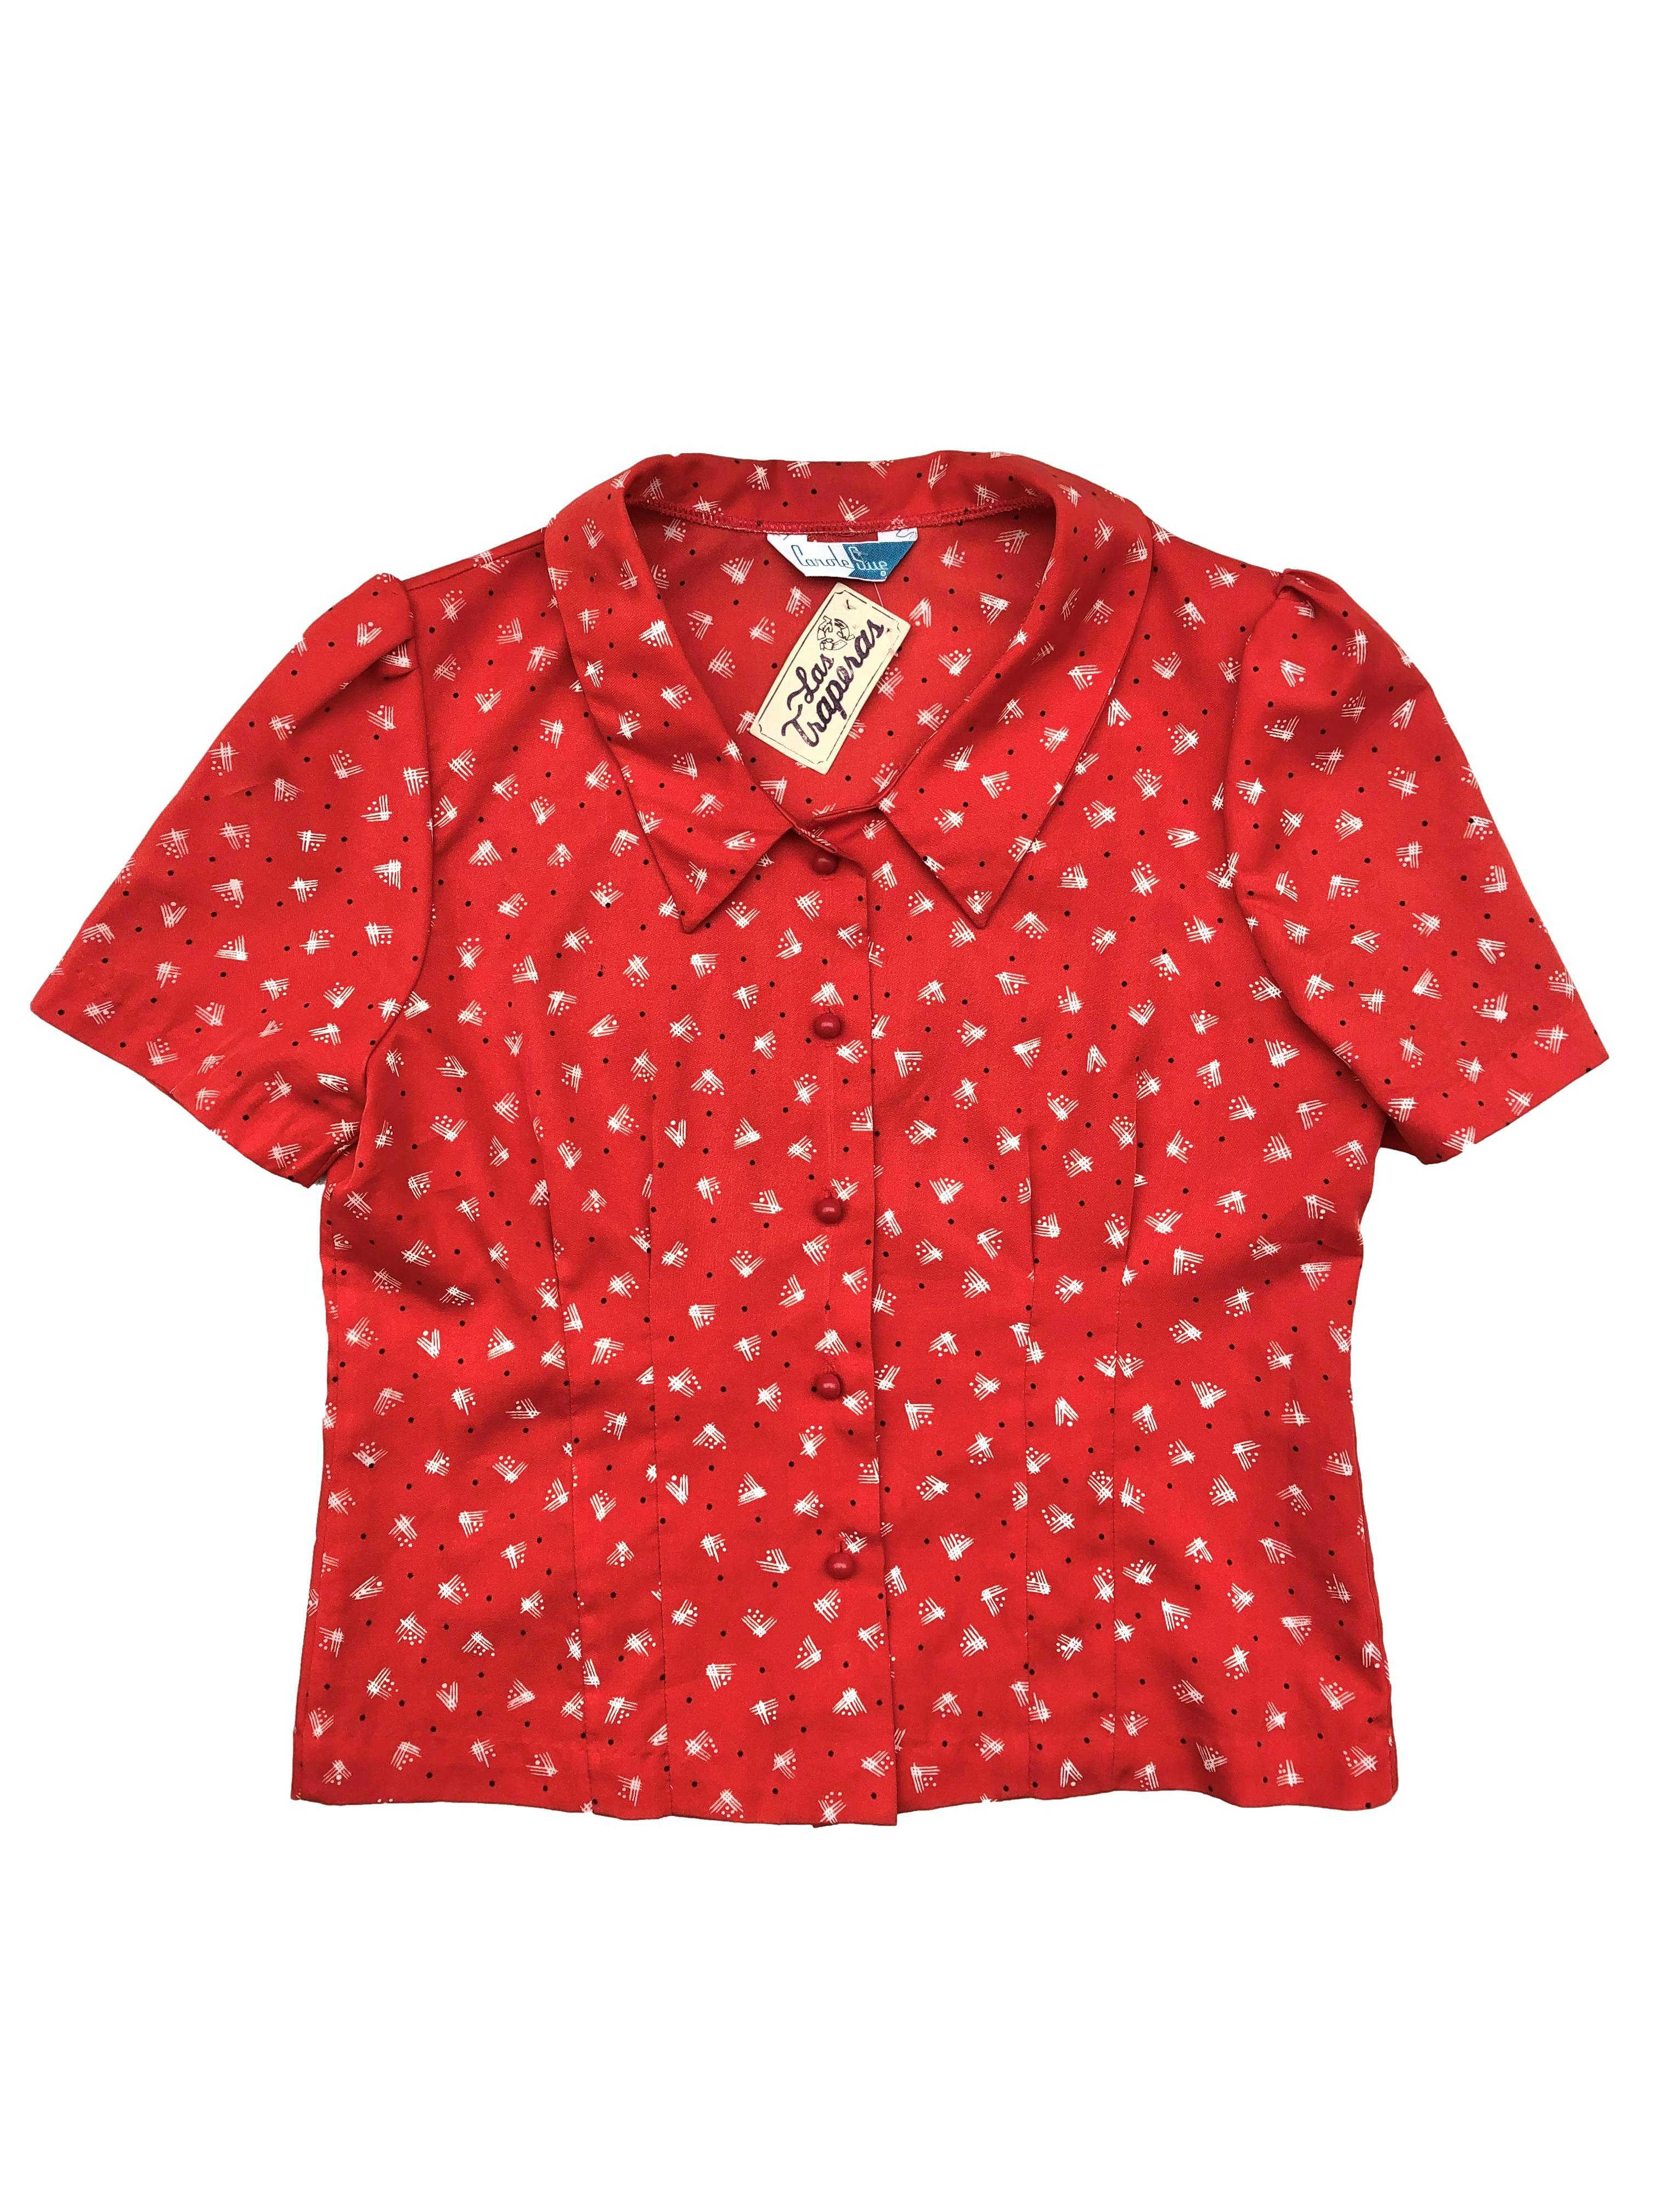 Blusa vintage rojo carmín con puntos negros y # blancos, manga corta, pinzas, tela plana. Busto 100cm, Largo 52cm